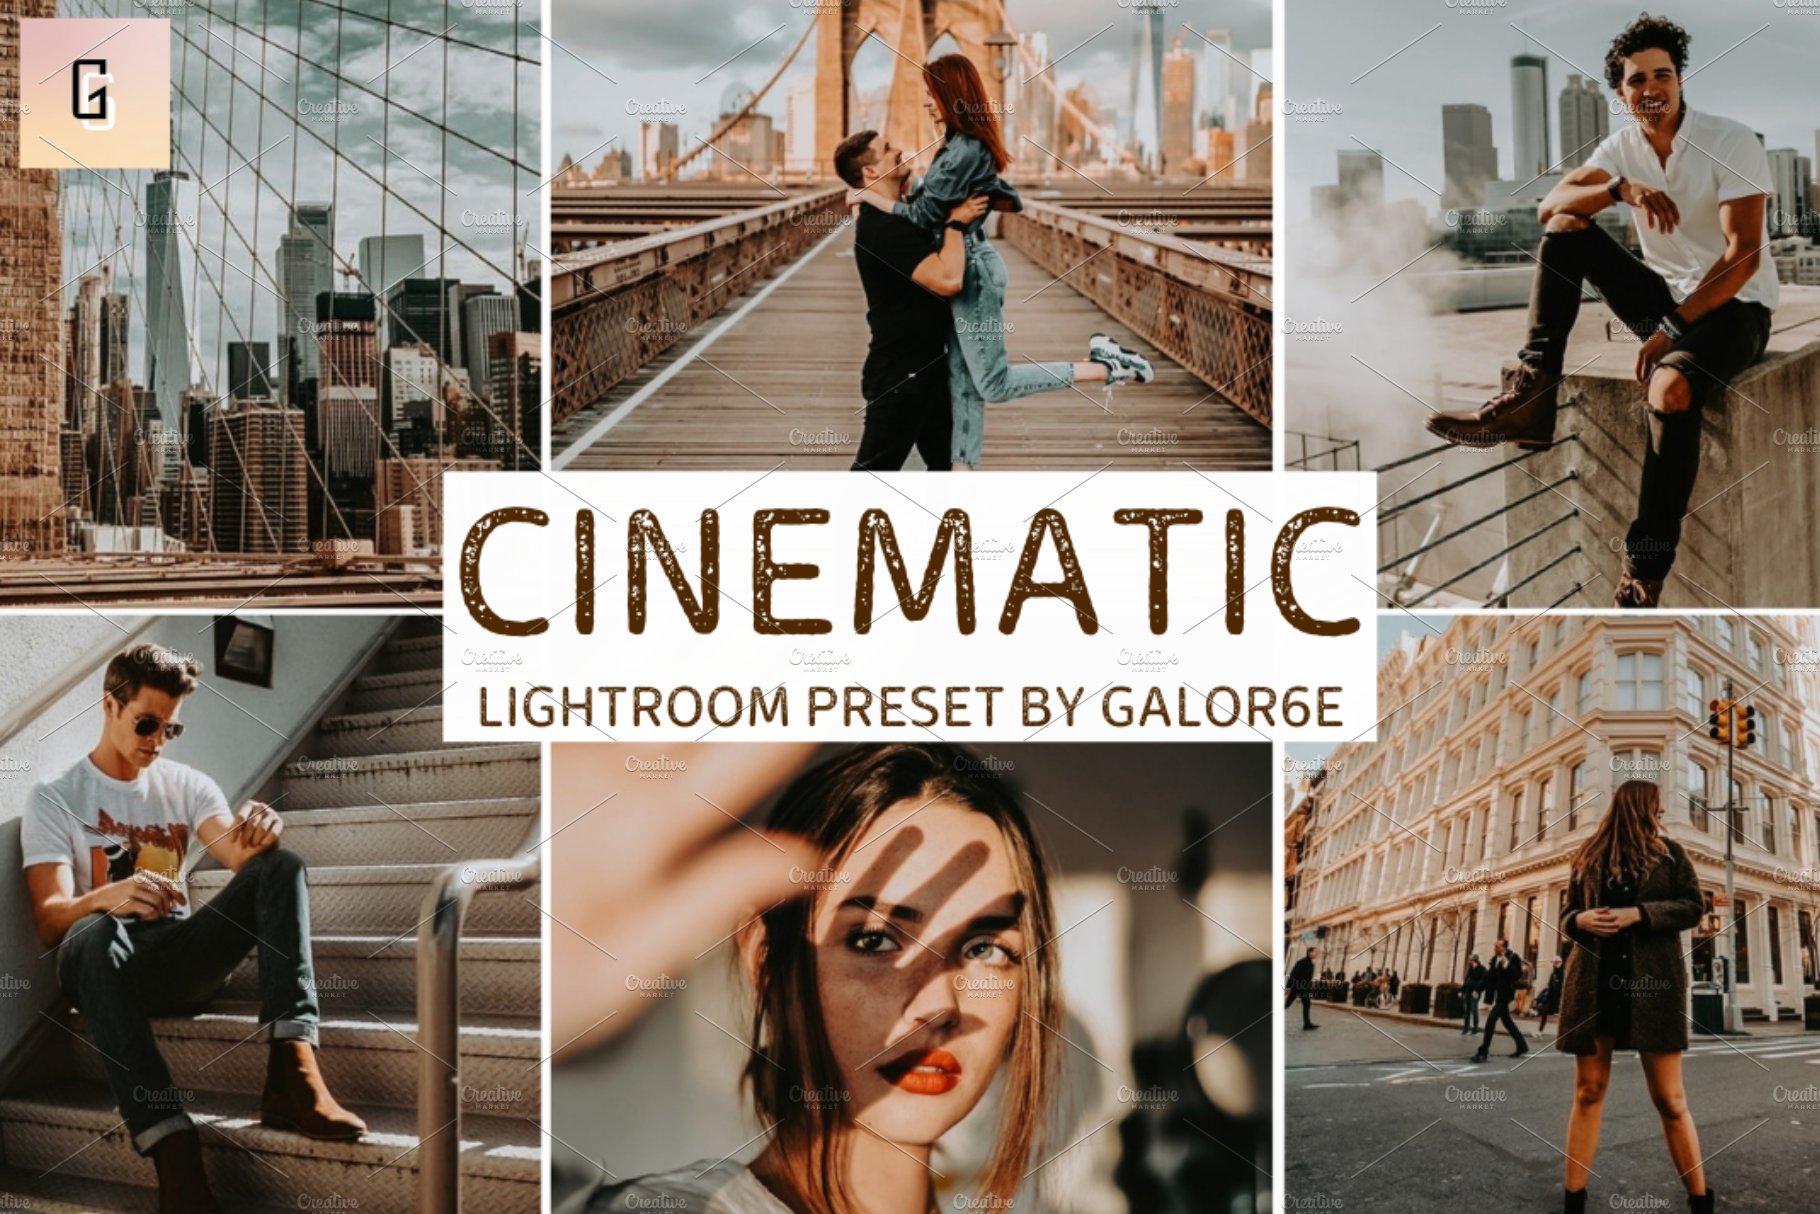 Lightroom Preset CINEMATIC - GALOR6Ecover image.